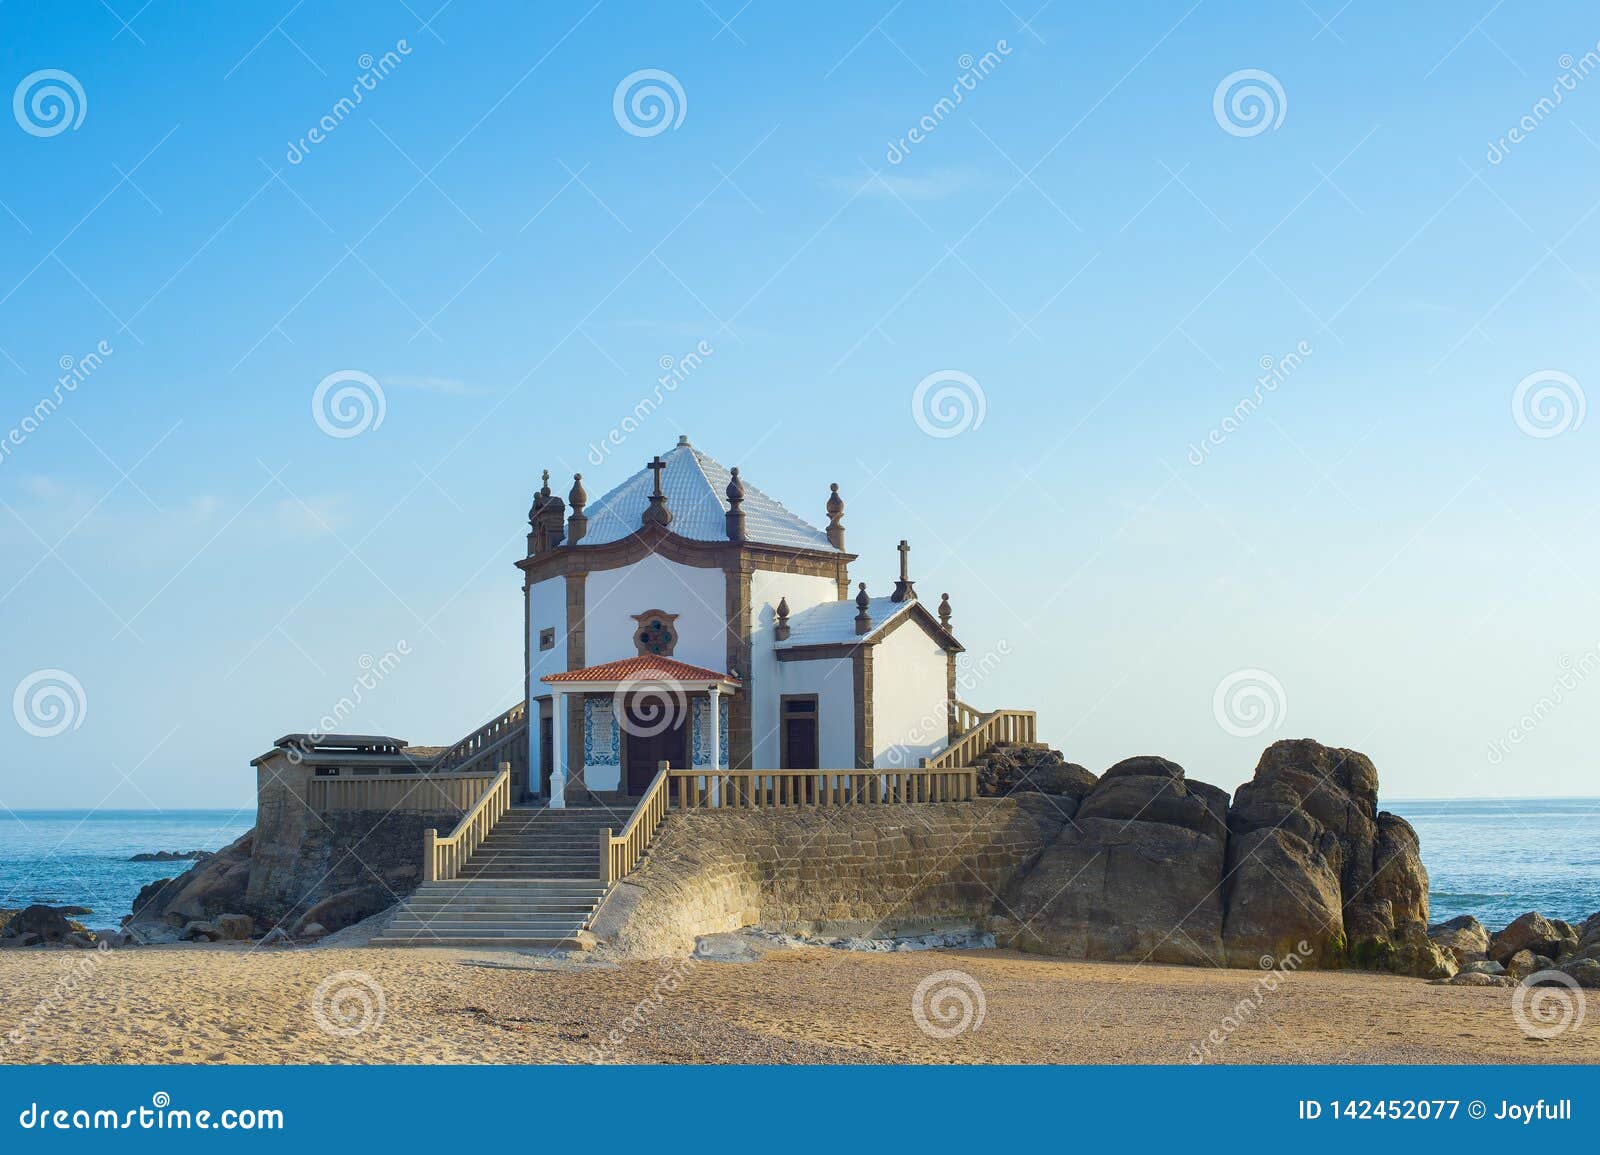 senhor da pedra chapel, portugal